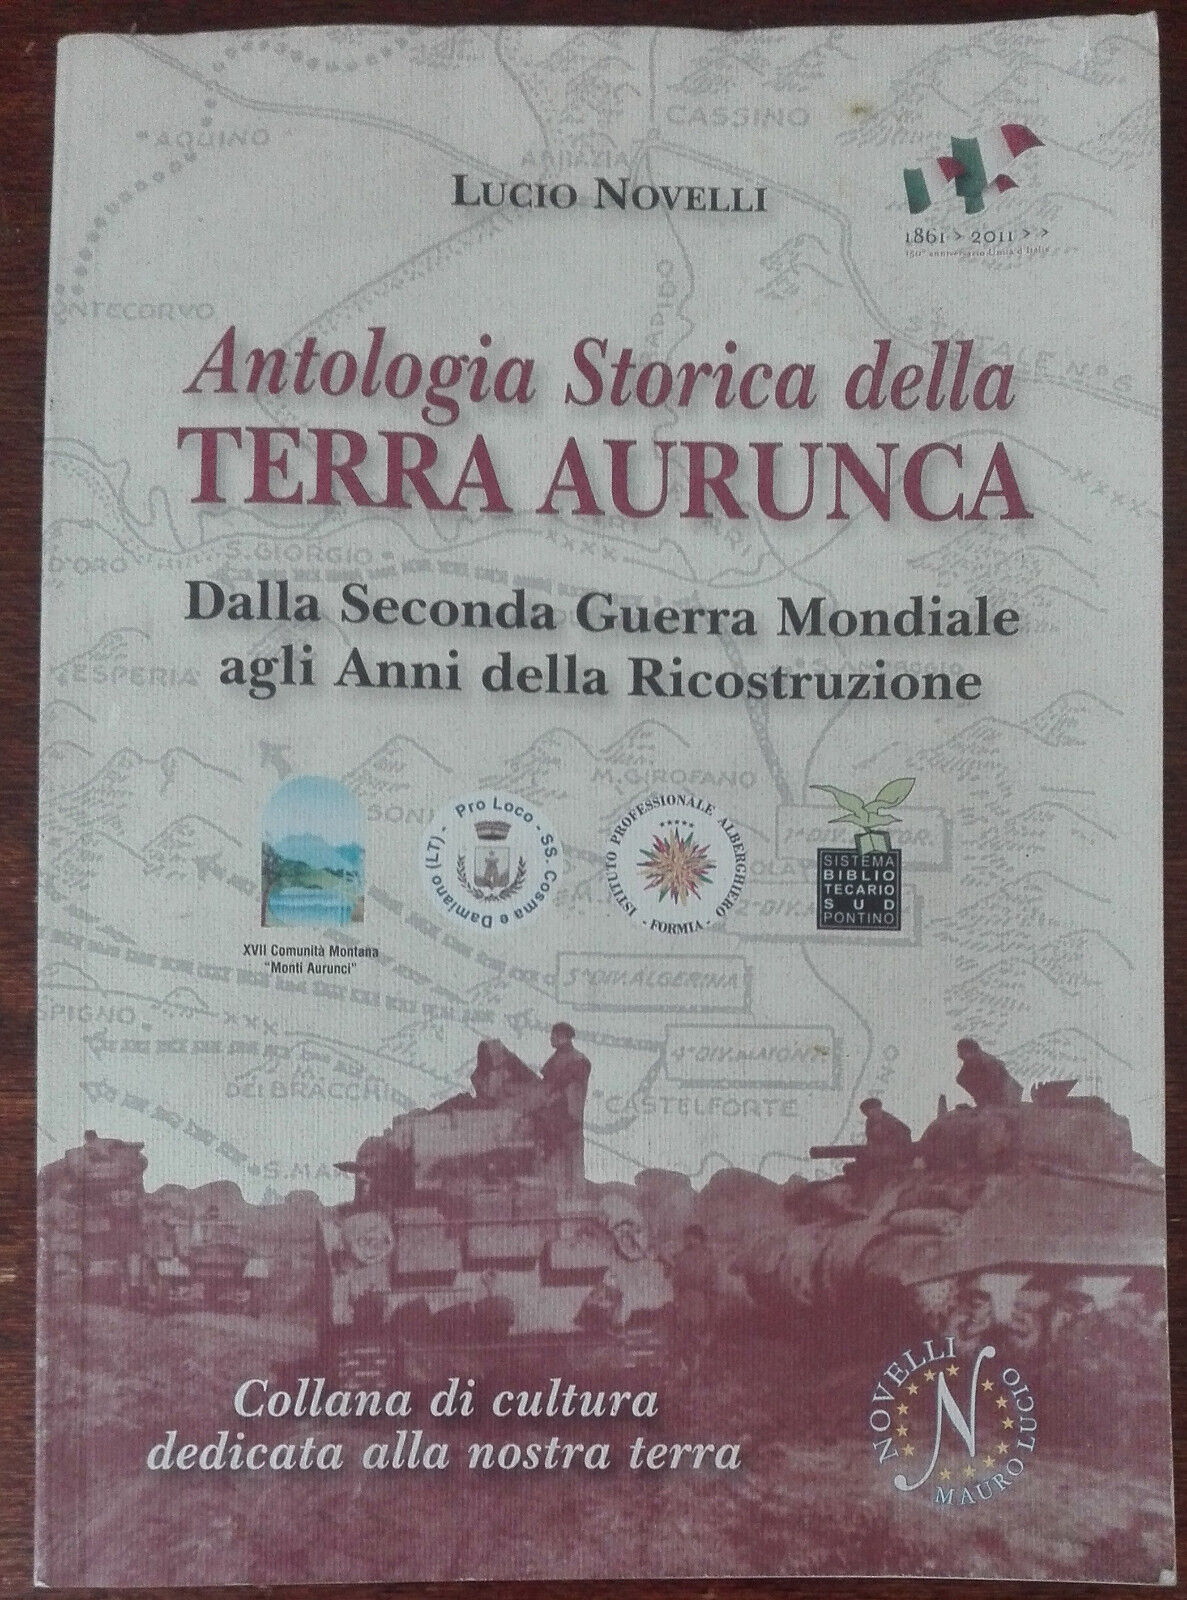 Antologia Storica della terra Aurunca - Lucio Novelli - Novelli, 2011 - A